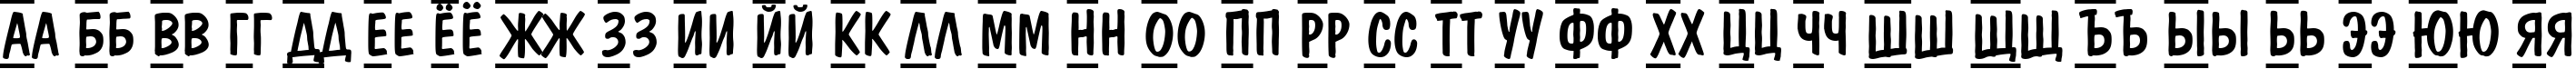 Пример написания русского алфавита шрифтом a_DomInoTitulDcFrCmb